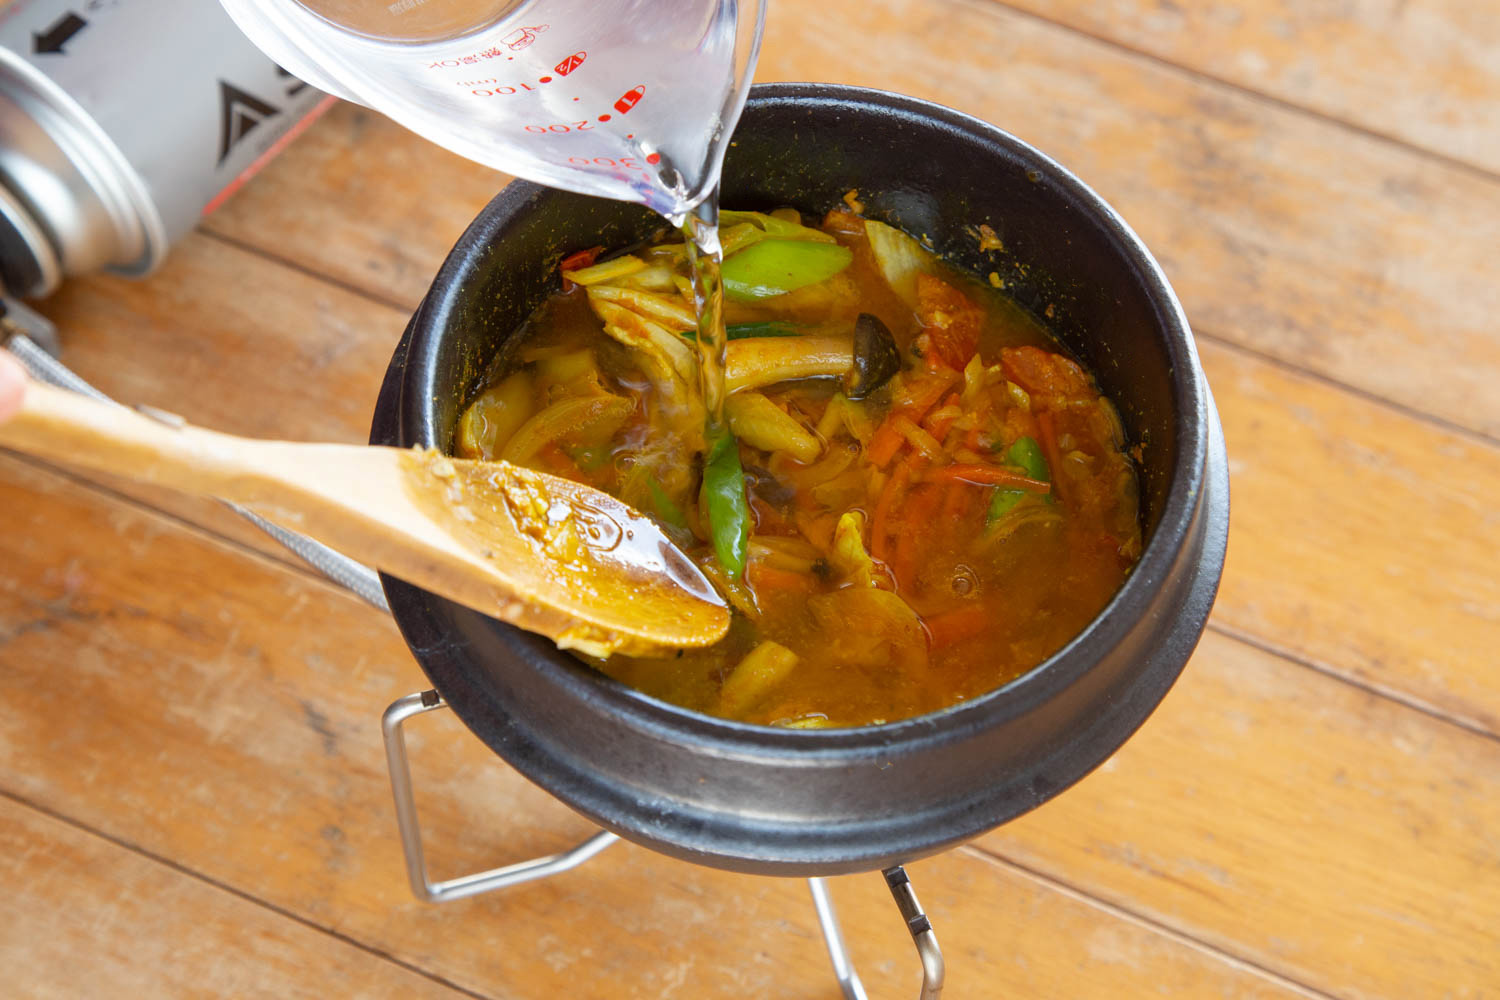 野菜を炒めた土鍋に水を注ぐ様子。